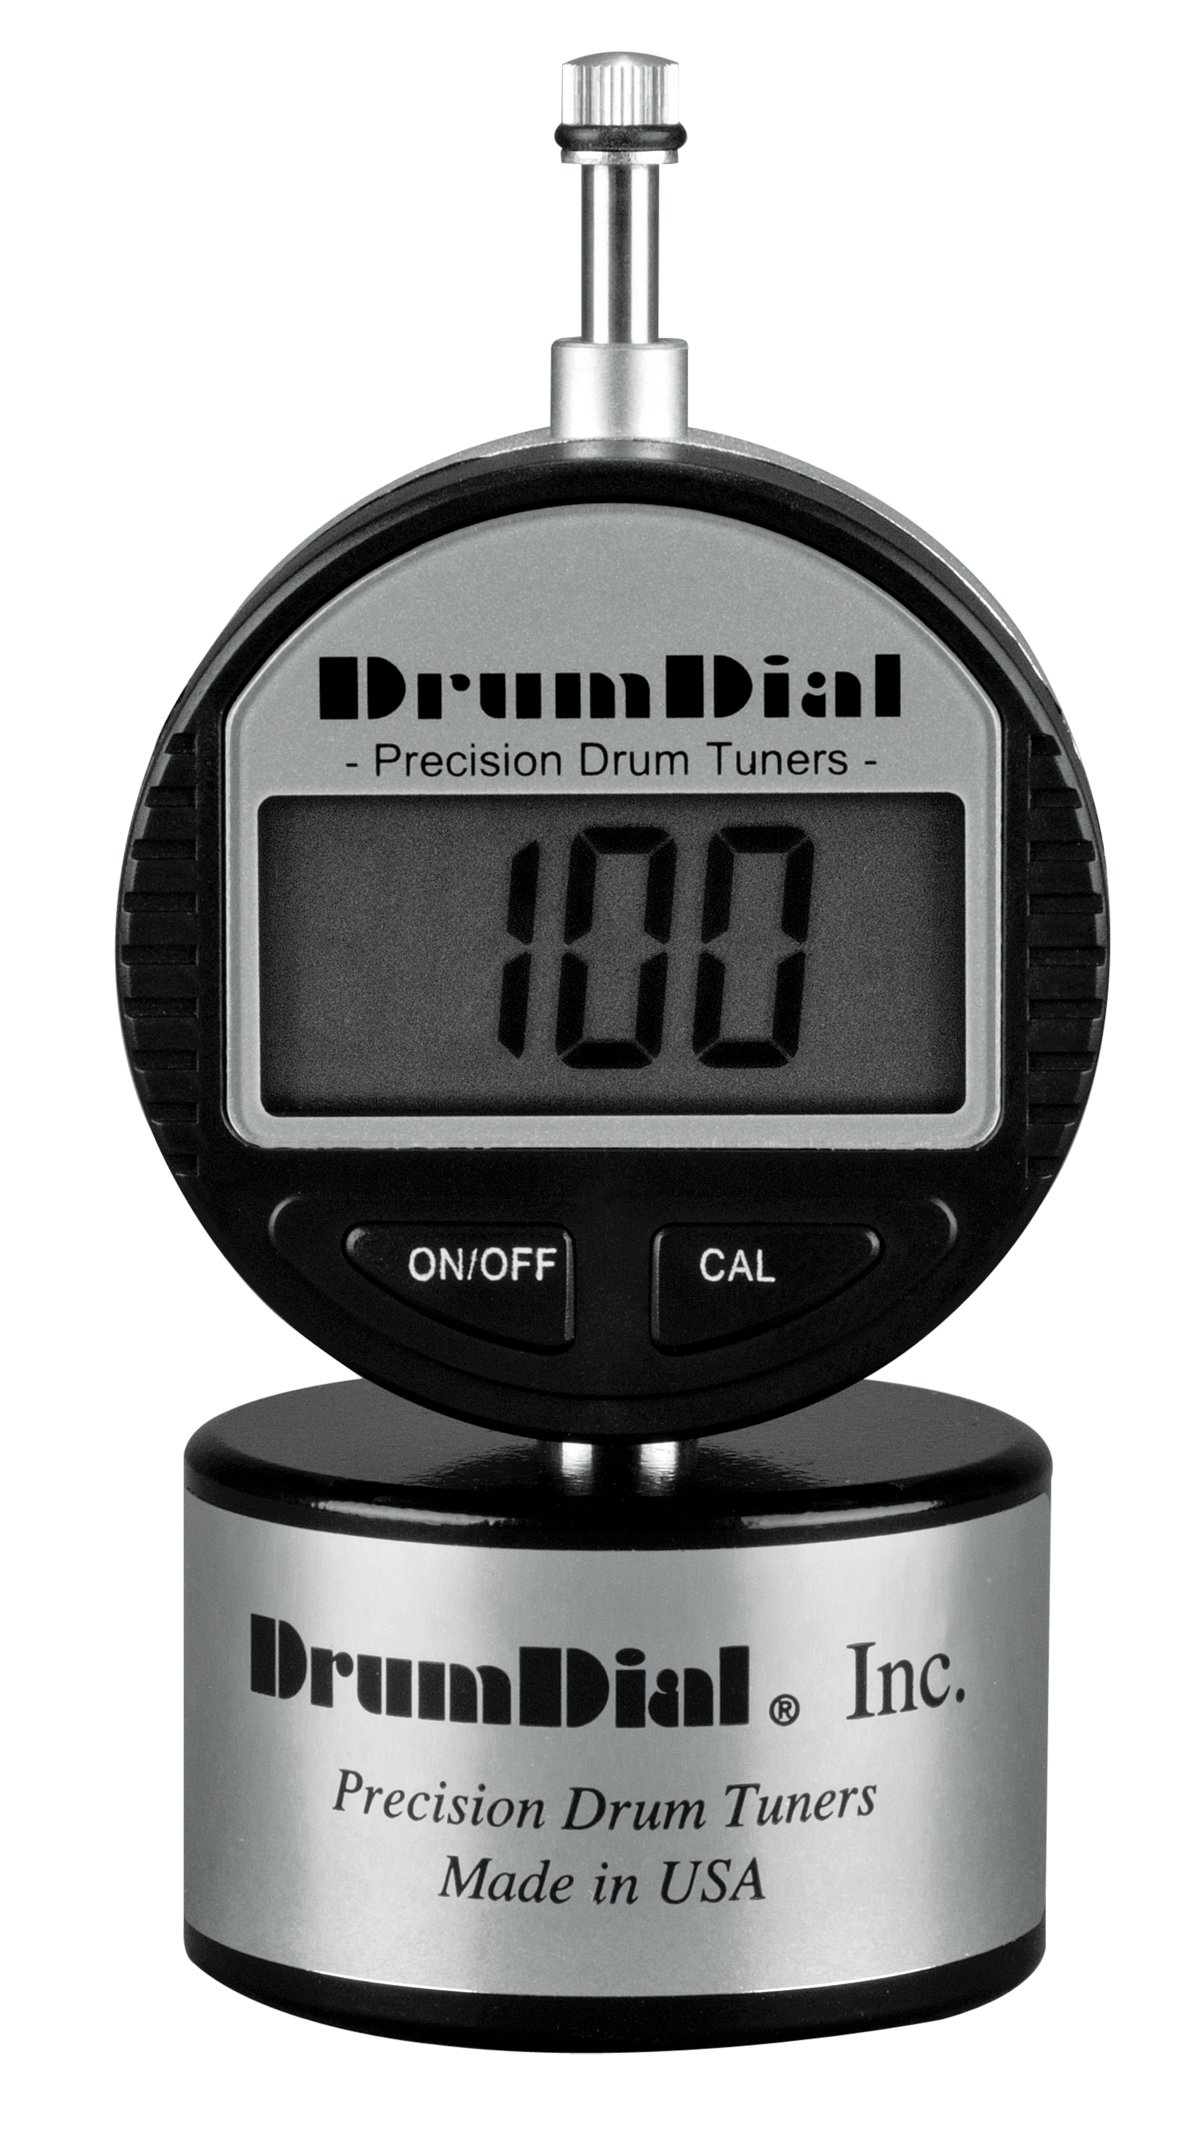 Drum Dial Digitales Präzisions-Stimmgerät für Schlagzeug, mit Tragetasche